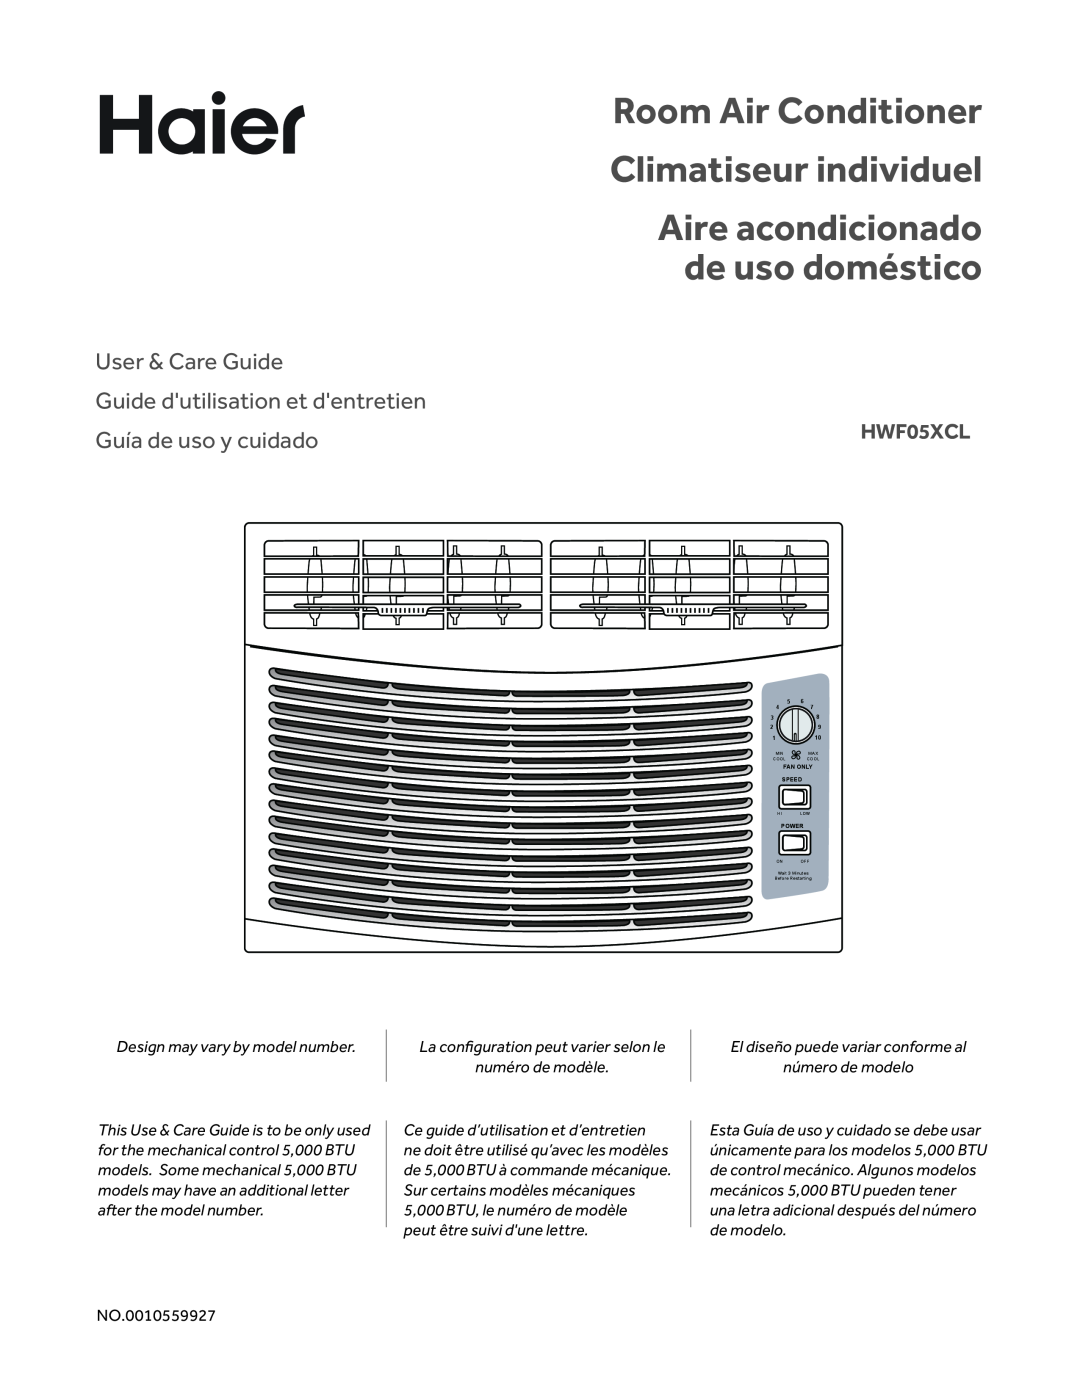 Haier HWF05XCL manual Room Air Conditioner Climatiseur individuel, Aire acondicionado de uso doméstico, User & Care Guide 